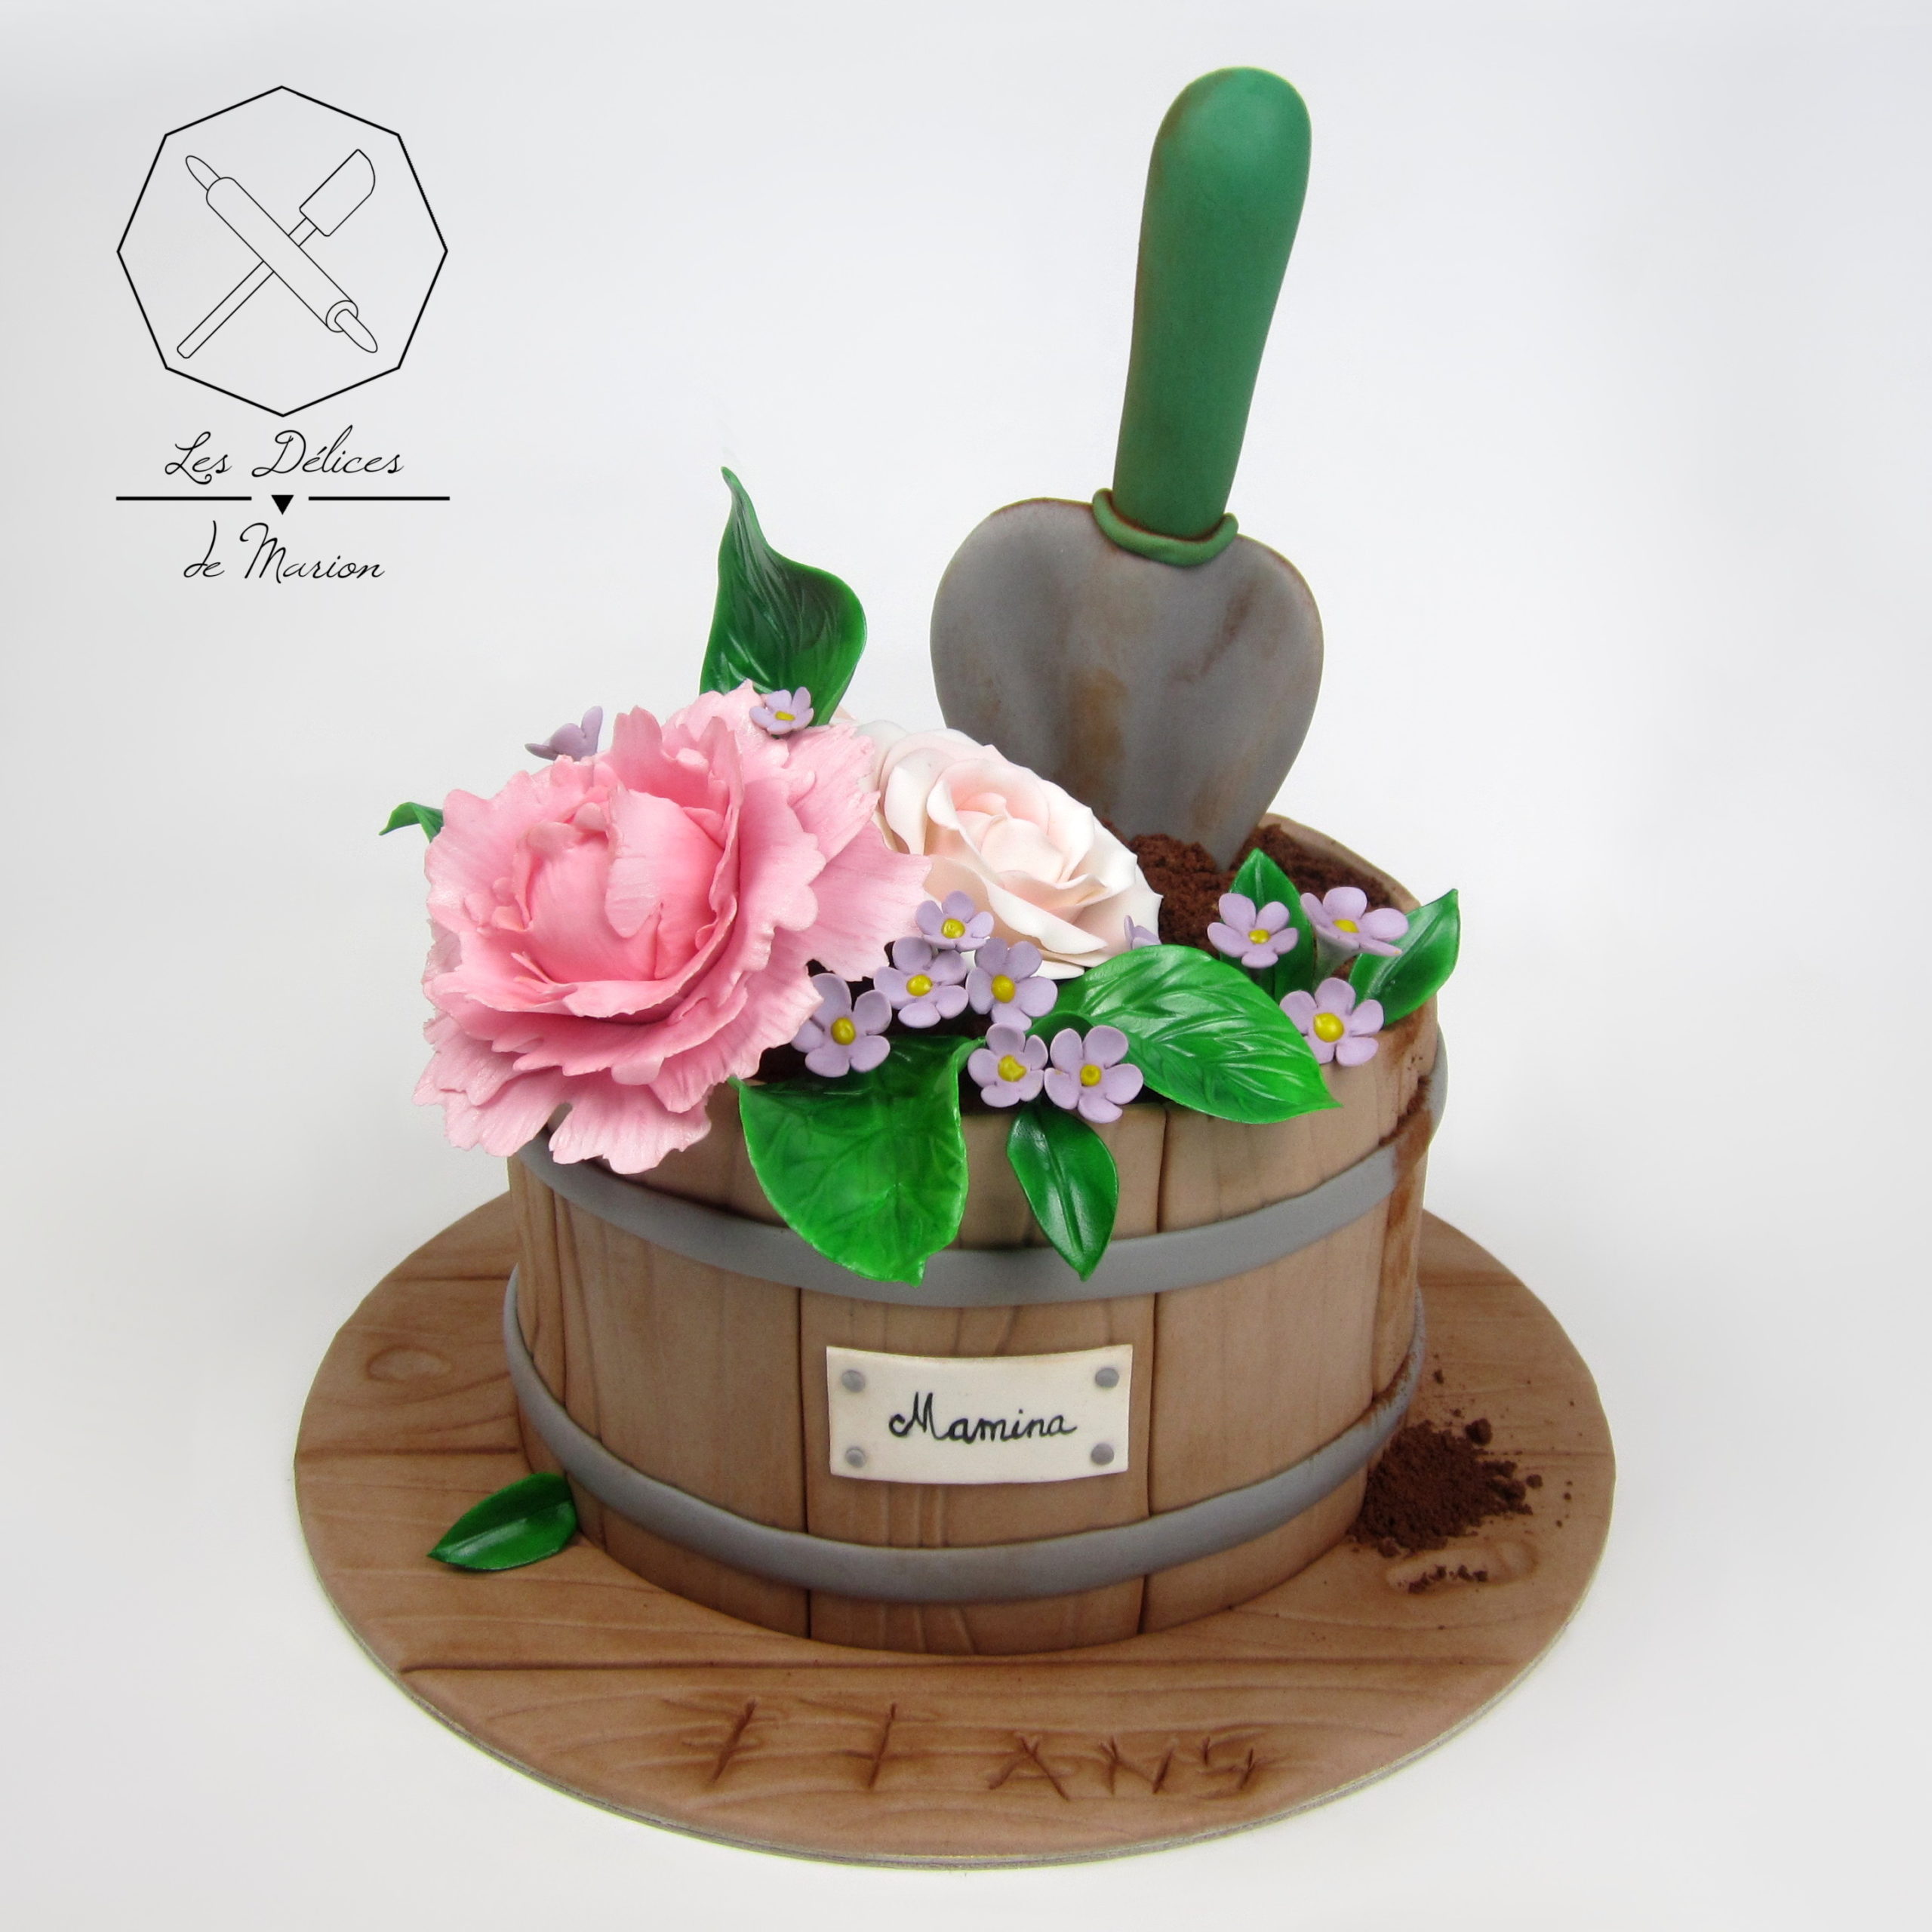 gateau_jardinage_pot_de_fleurs_pelle_cake-design_delices-marion